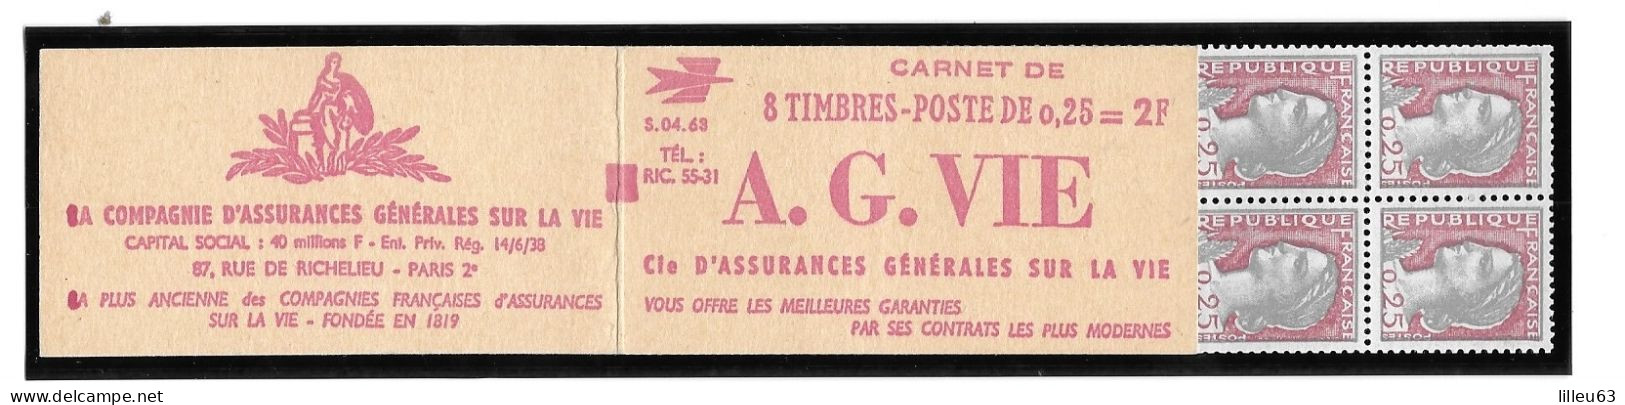 Rare Variete 2 Carnets Marianne Decaris  1263  Carnet 367 Et 367a  Maury  Série 4.63  6mm Au Lieu De 8mm SUP - Modernes : 1959-...